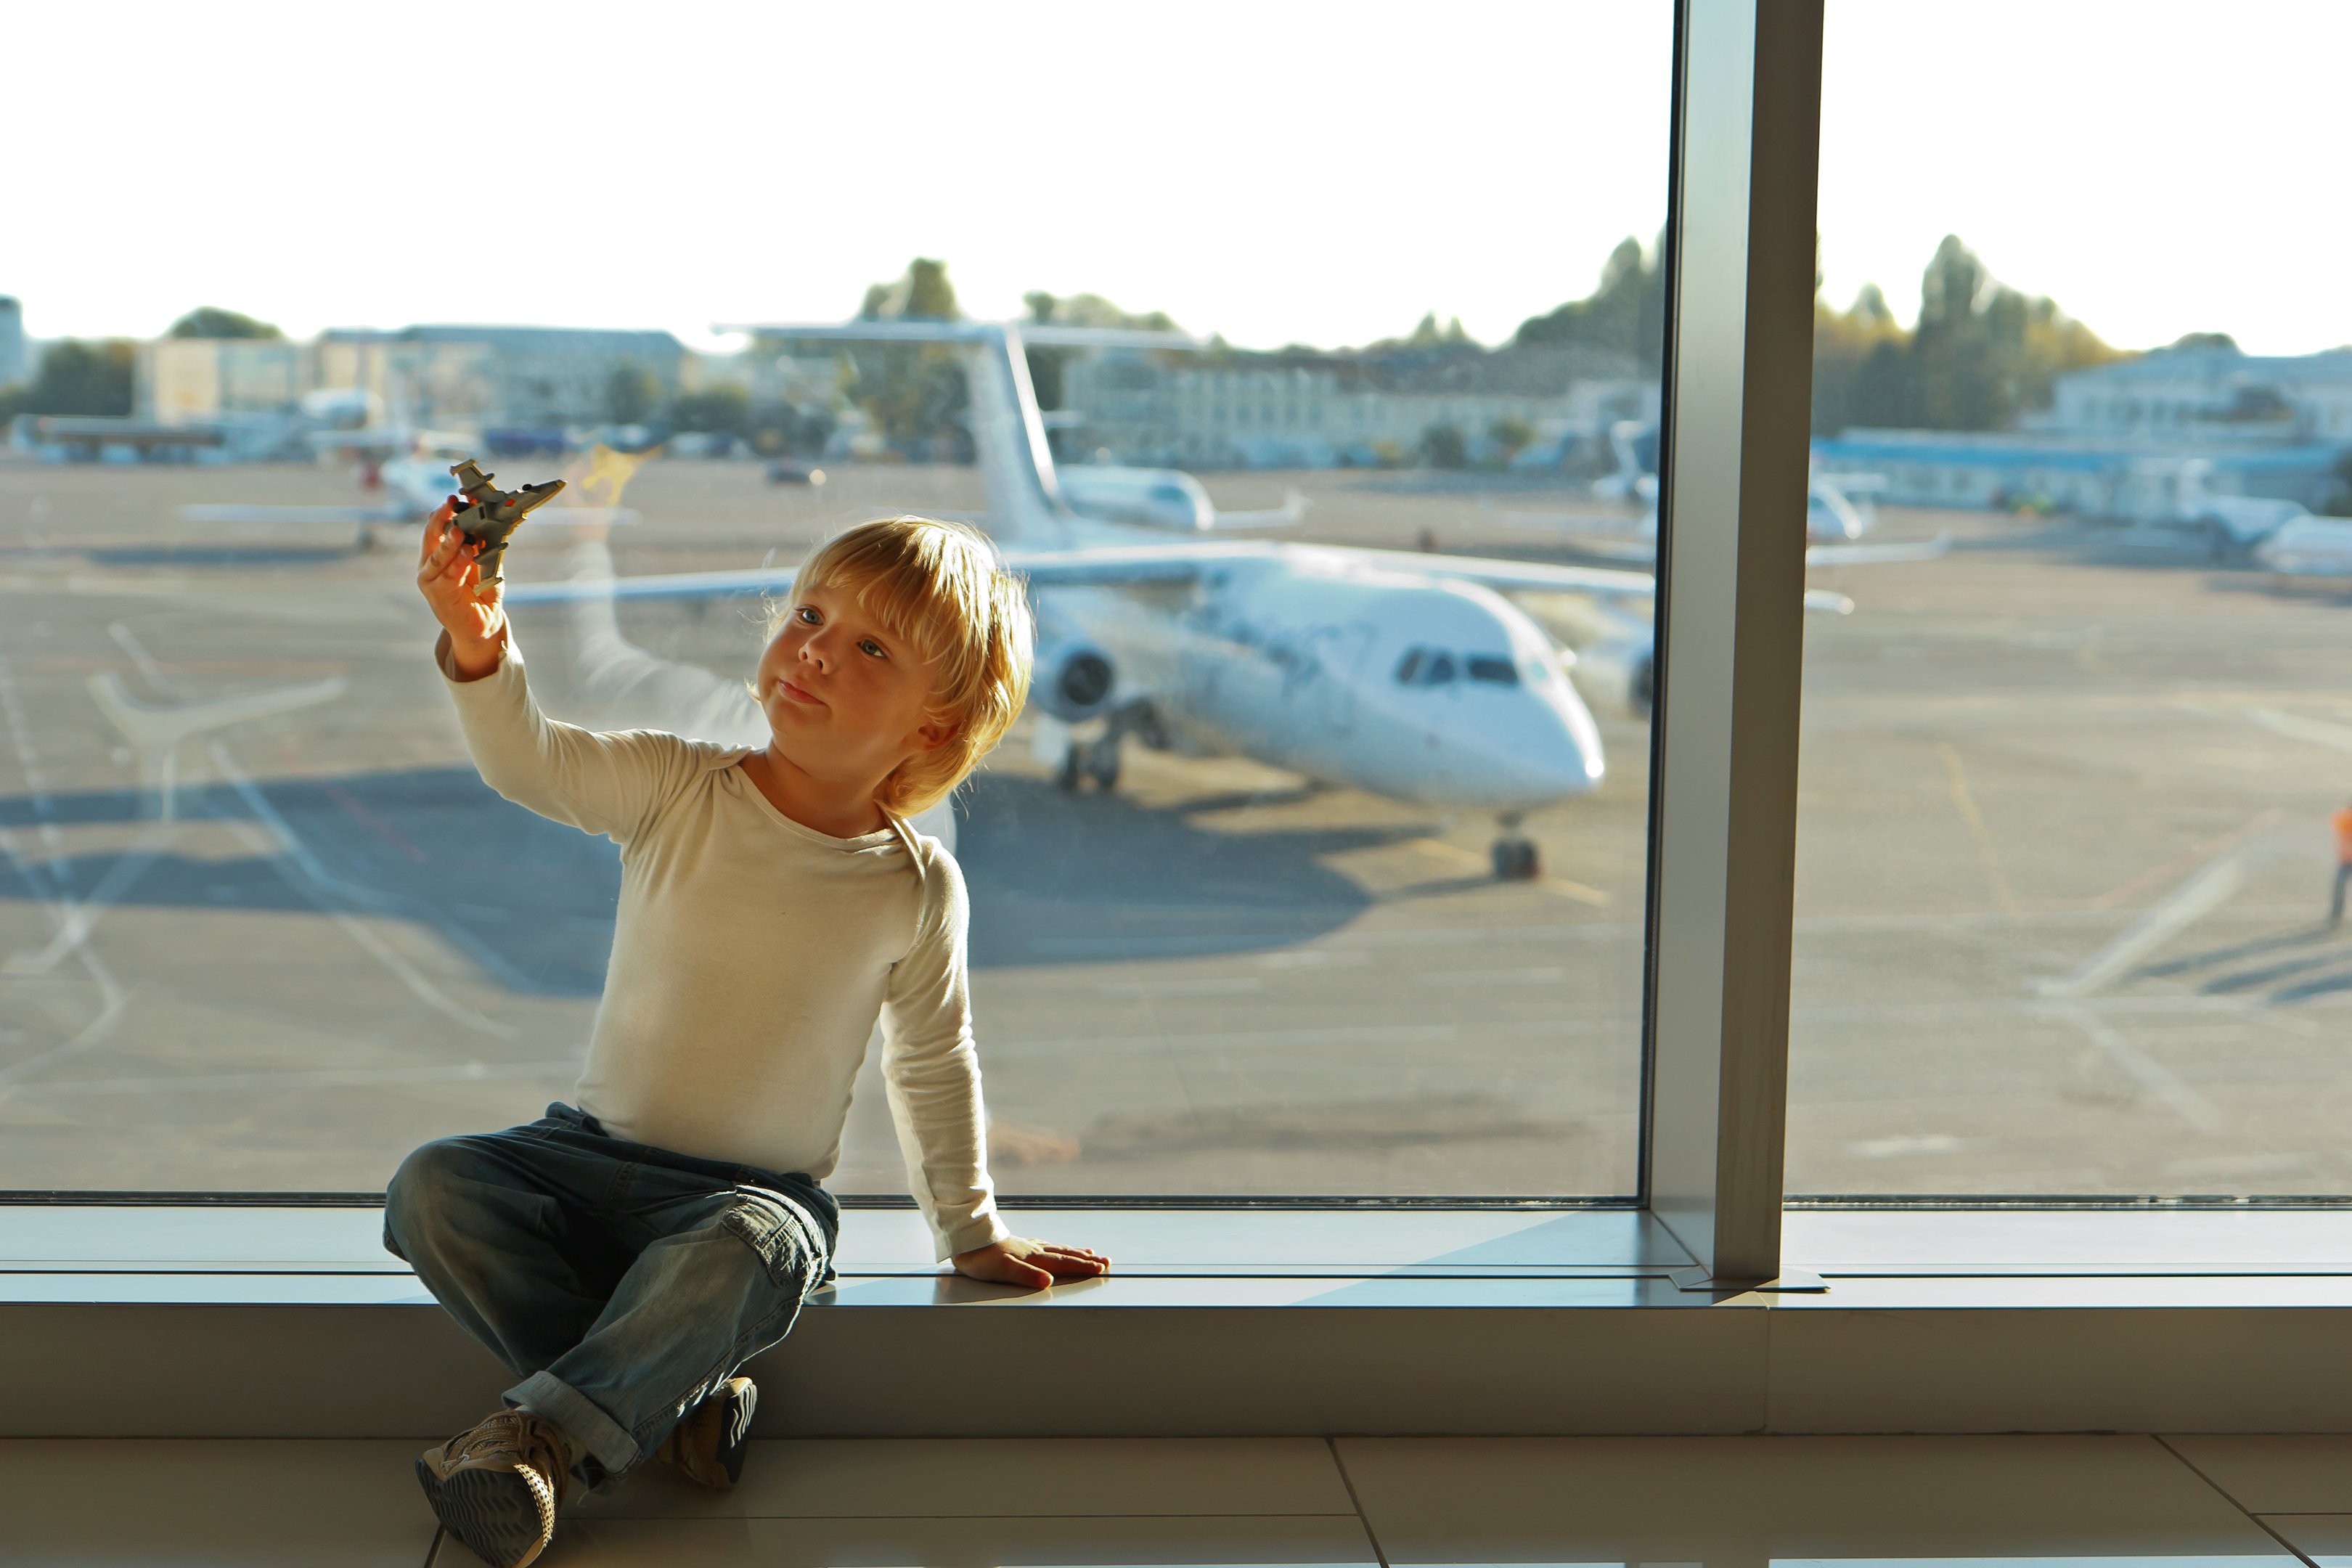 Reisespiele für Kinder - Beschäftigung für Kinder im Flugzeug Auto - Kind spielt mit Spielflugzeug